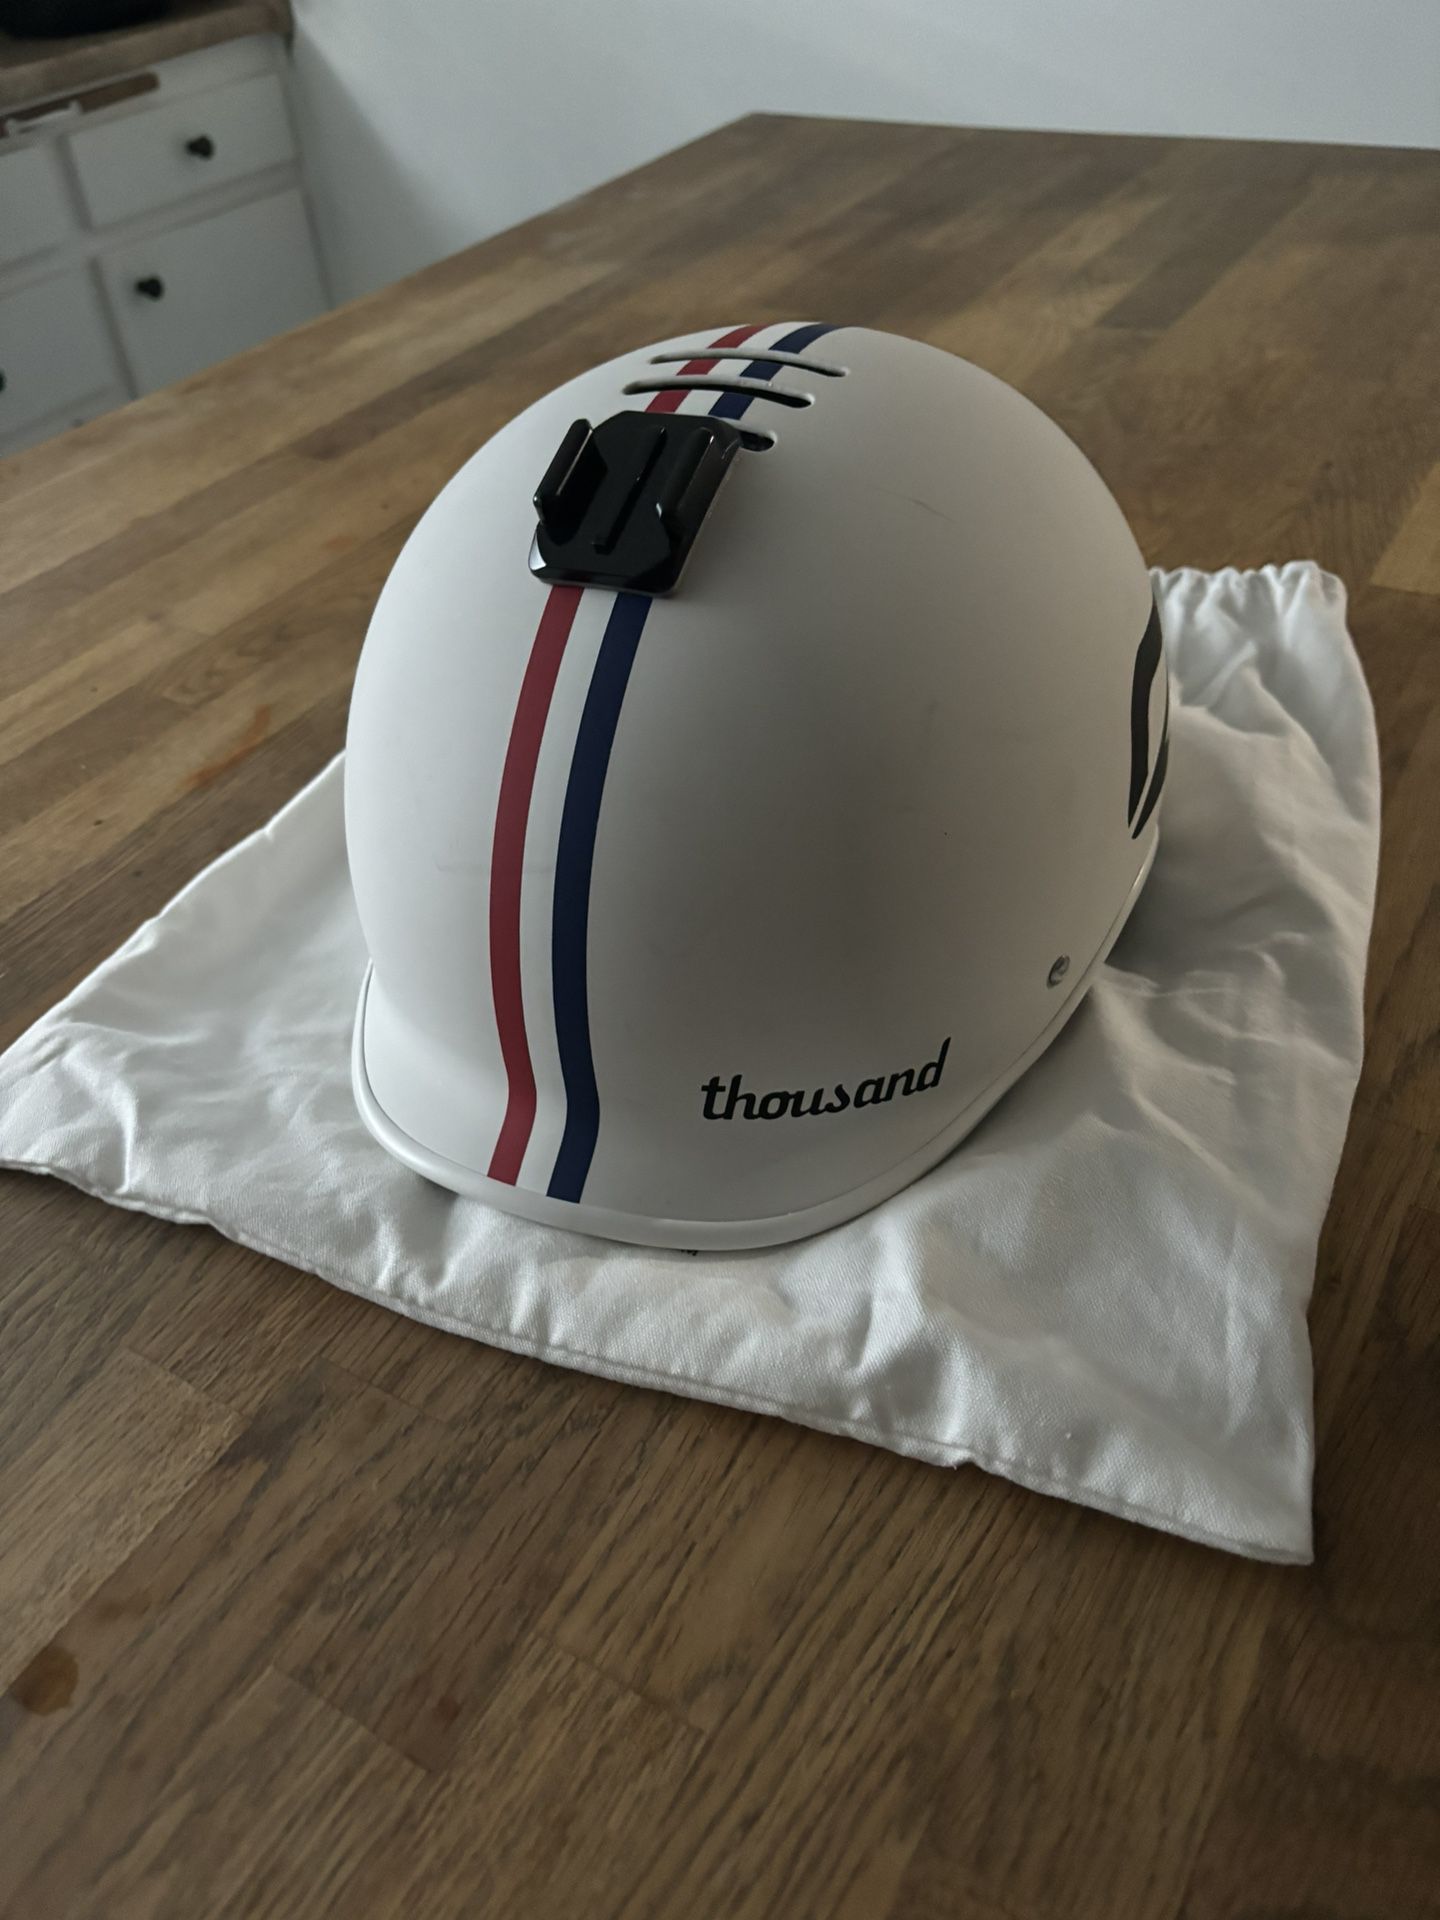 Thousand Helmet